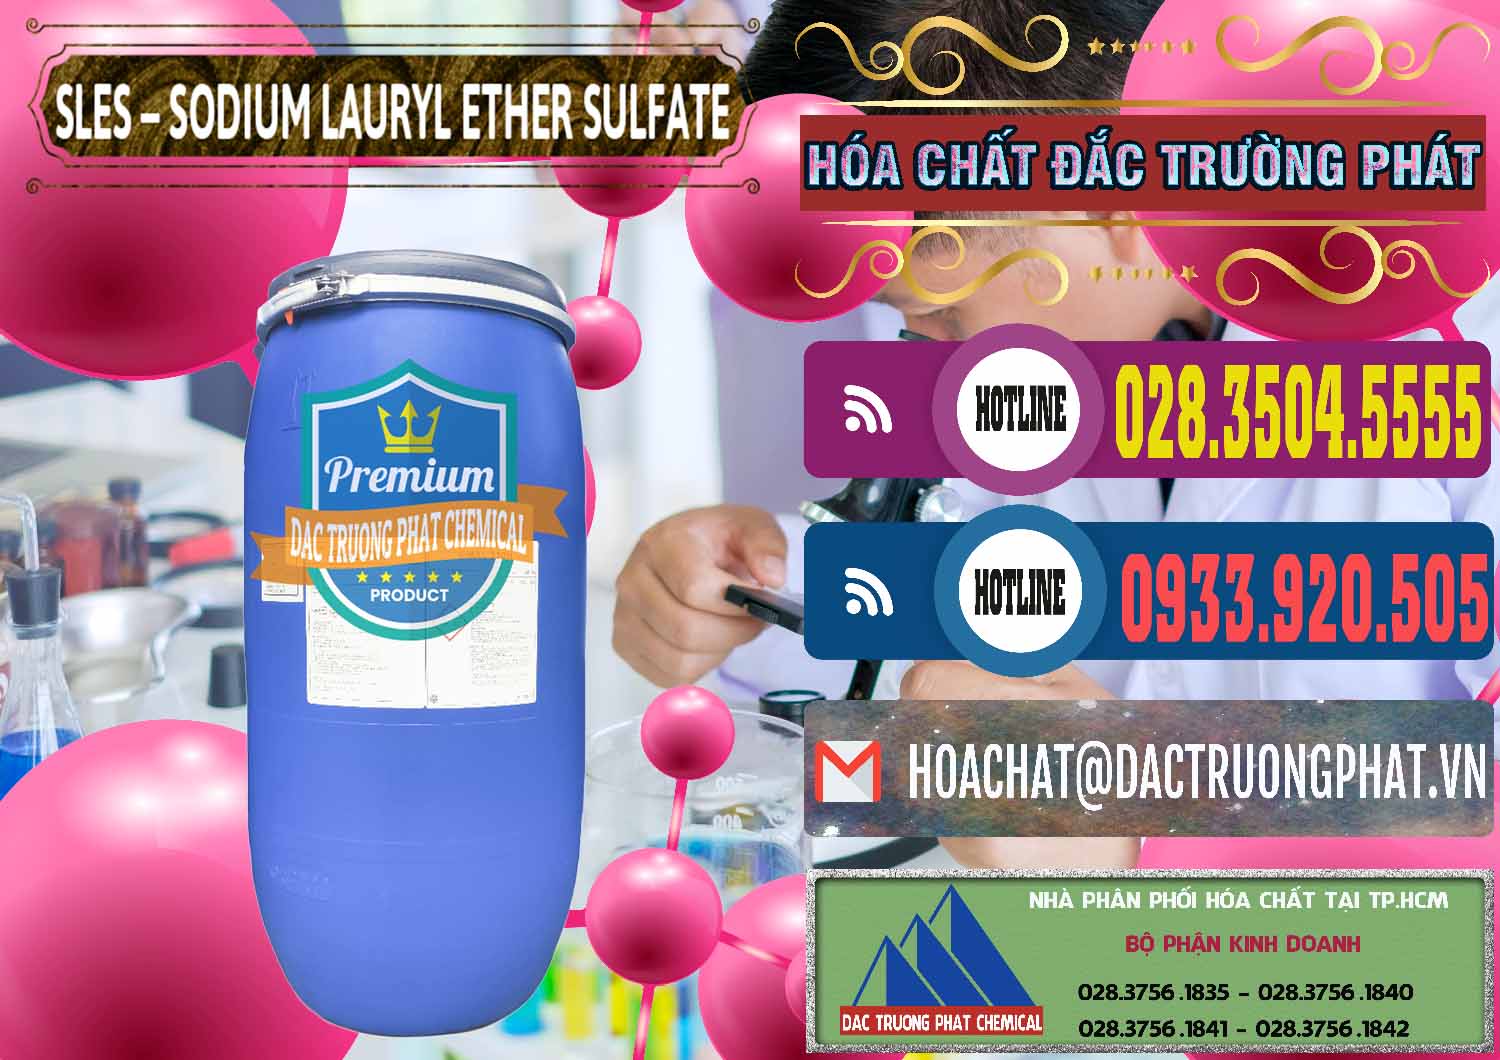 Nơi chuyên bán _ cung cấp Chất Tạo Bọt Sles - Sodium Lauryl Ether Sulphate Kao Indonesia - 0046 - Công ty nhập khẩu - phân phối hóa chất tại TP.HCM - muabanhoachat.com.vn